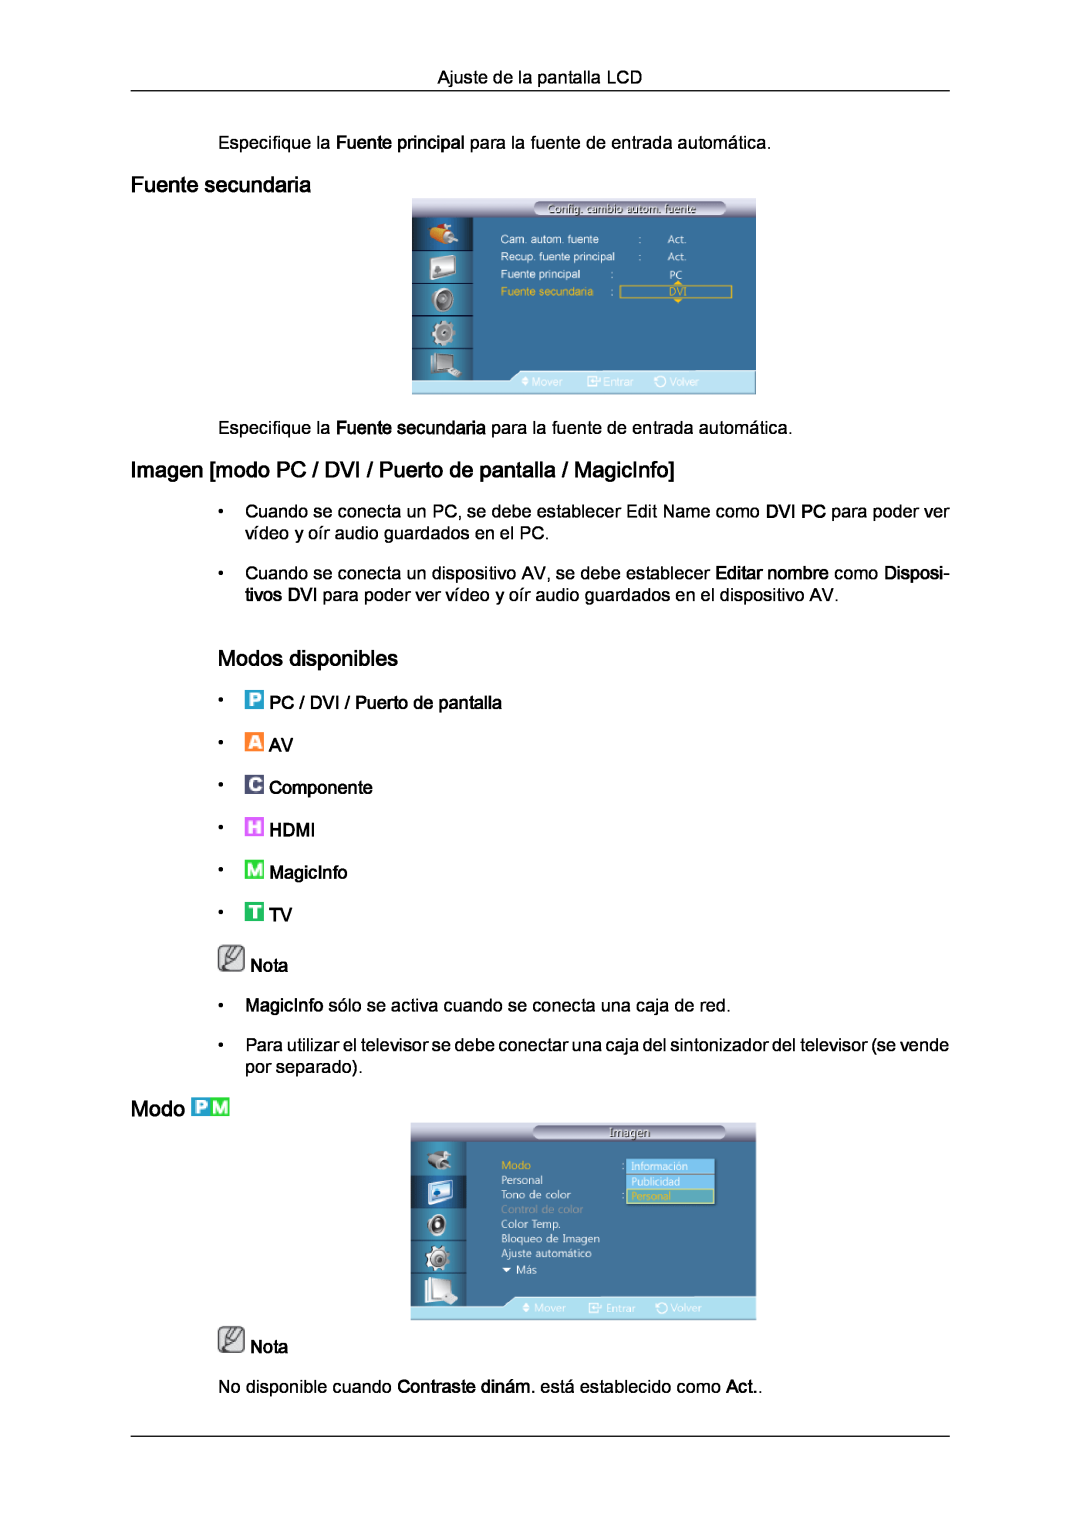 Samsung LH40CRPMBD/EN Fuente secundaria, Imagen modo PC / DVI / Puerto de pantalla / MagicInfo, Modos disponibles, Nota 